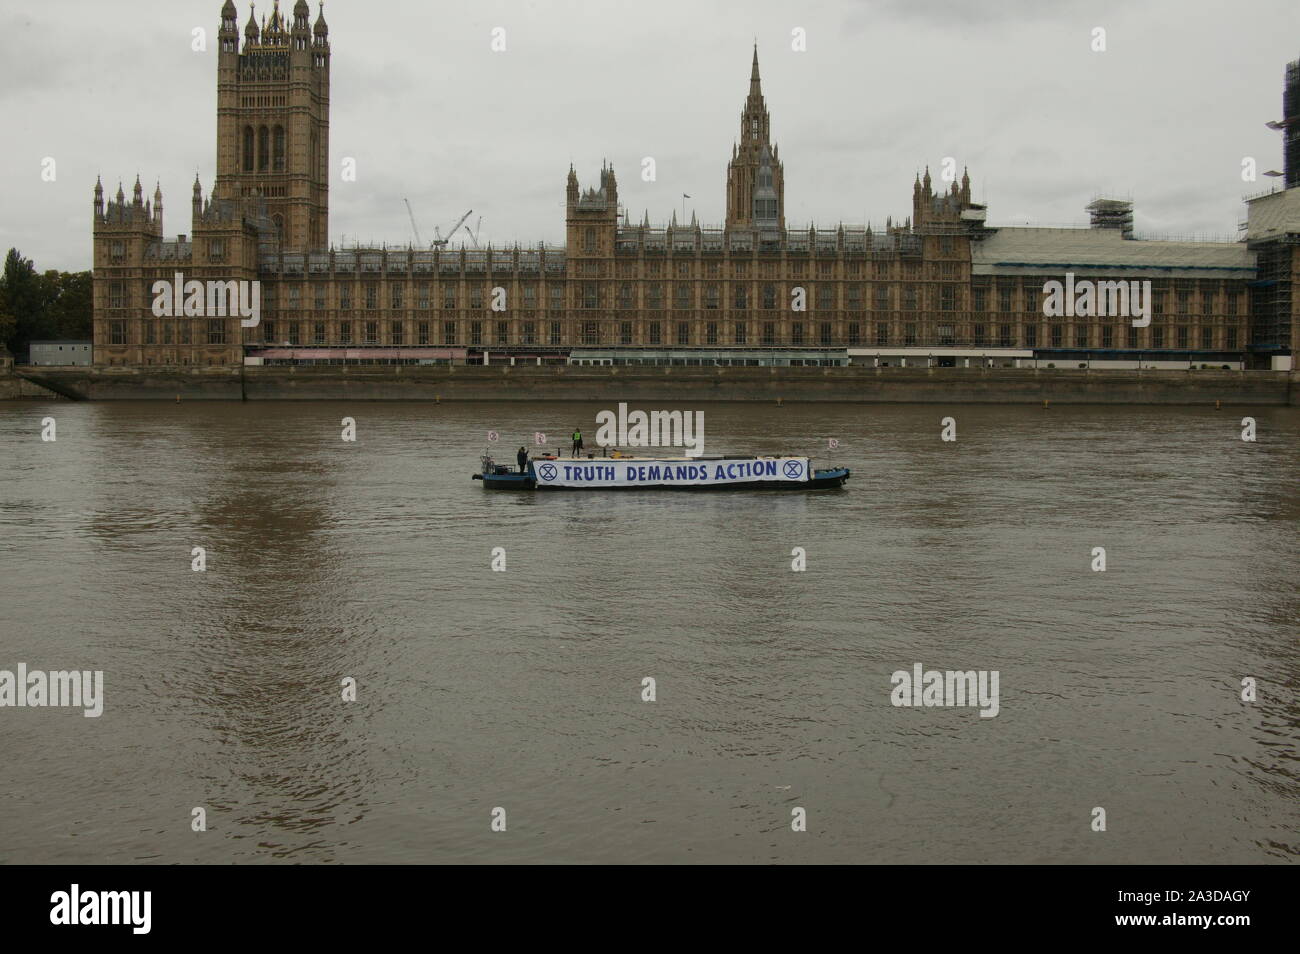 Londra, Regno Unito. 07 ott 2019, estinzione della ribellione stretto protesta in barca sul fiume Tamigi al di fuori del Palazzo di Westminster, per evidenziare il cambiamento climatico. © Martin Foskett/Knelstrom Ltd/Alamy Live News Foto Stock